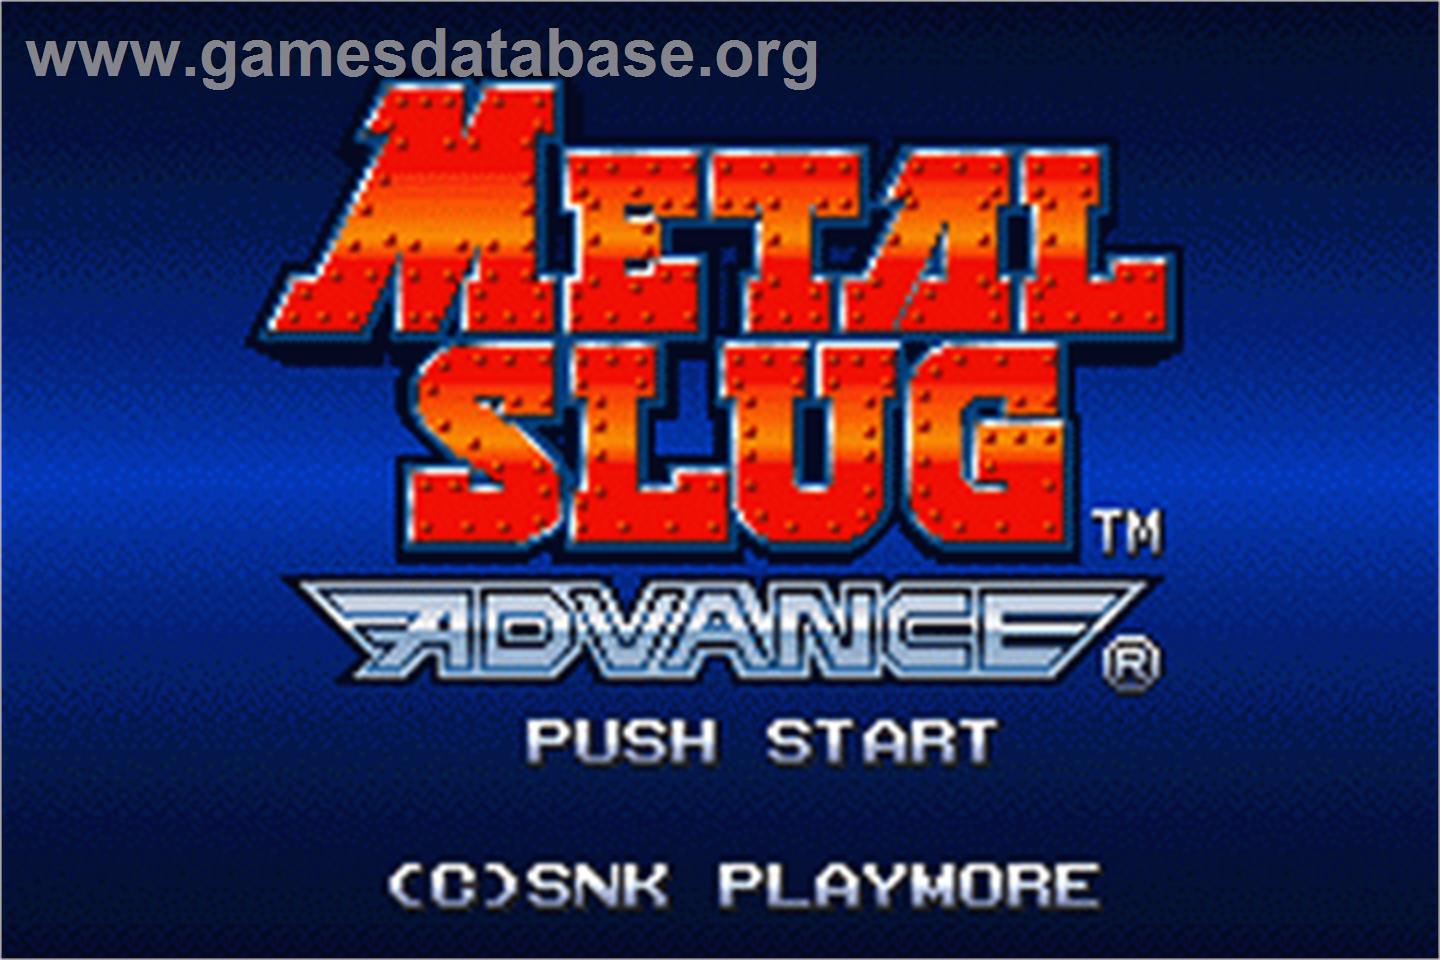 Metal Slug Advance - Nintendo Game Boy Advance - Artwork - Title Screen